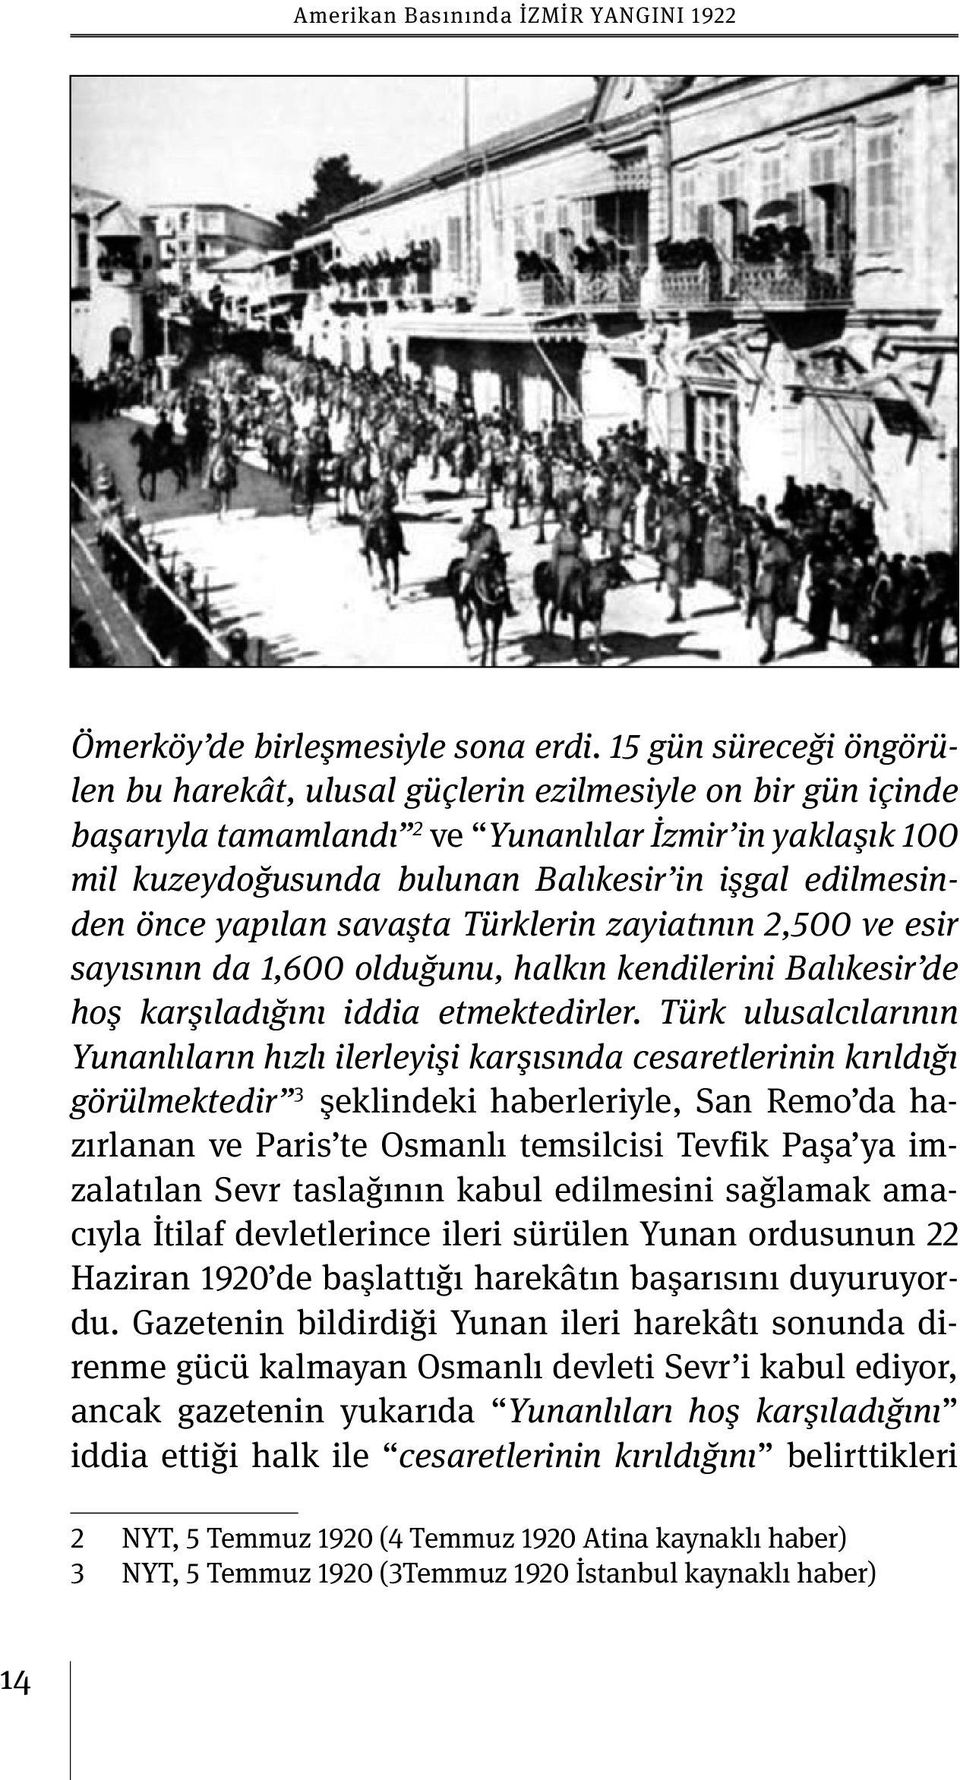 edilmesinden önce yapılan savaşta Türklerin zayiatının 2,500 ve esir sayısının da 1,600 olduğunu, halkın kendilerini Balıkesir de hoş karşıladığını iddia etmektedirler.